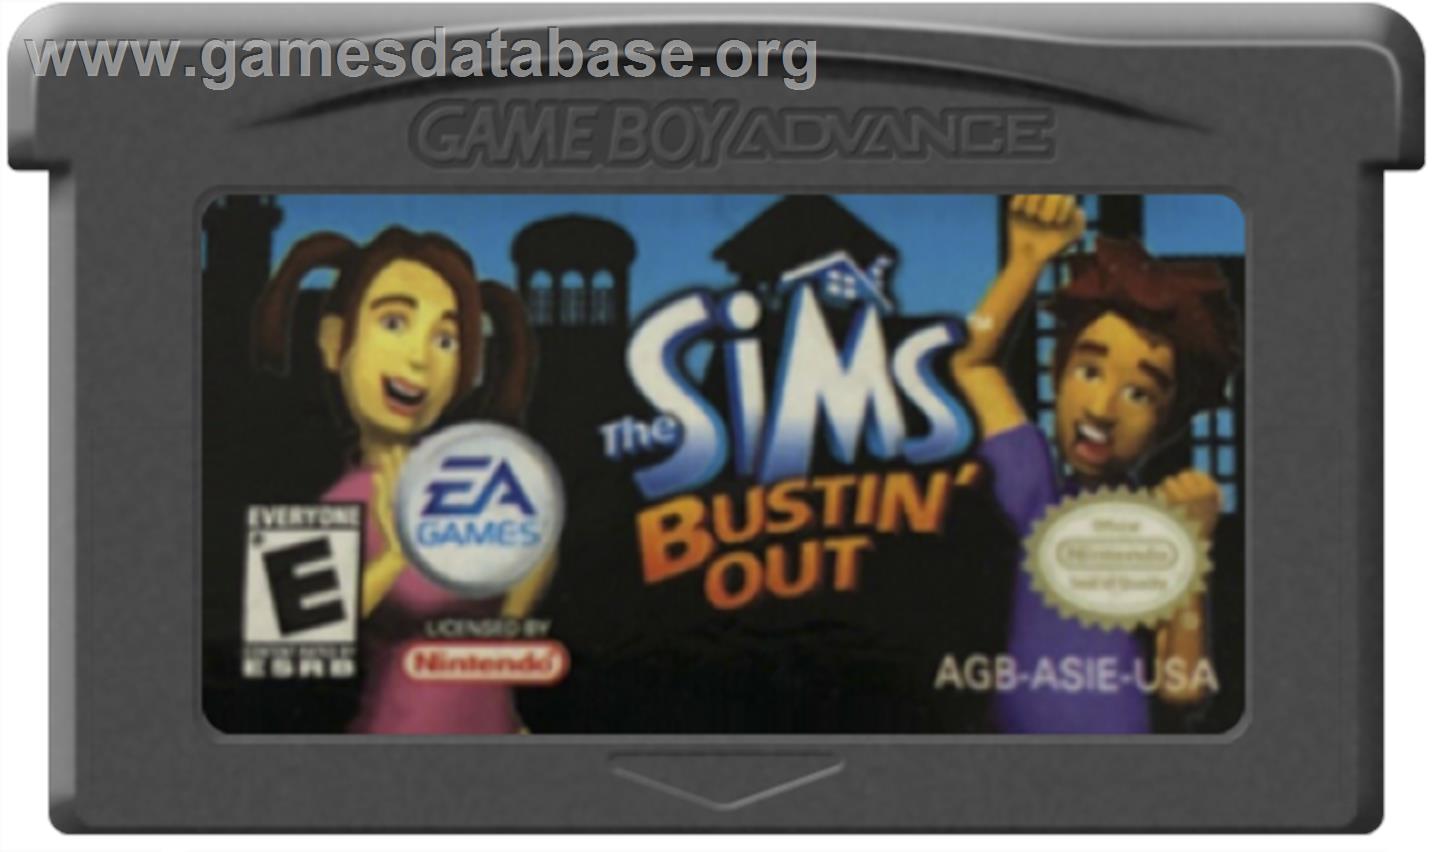 Sims: Bustin' Out - Nintendo Game Boy Advance - Artwork - Cartridge